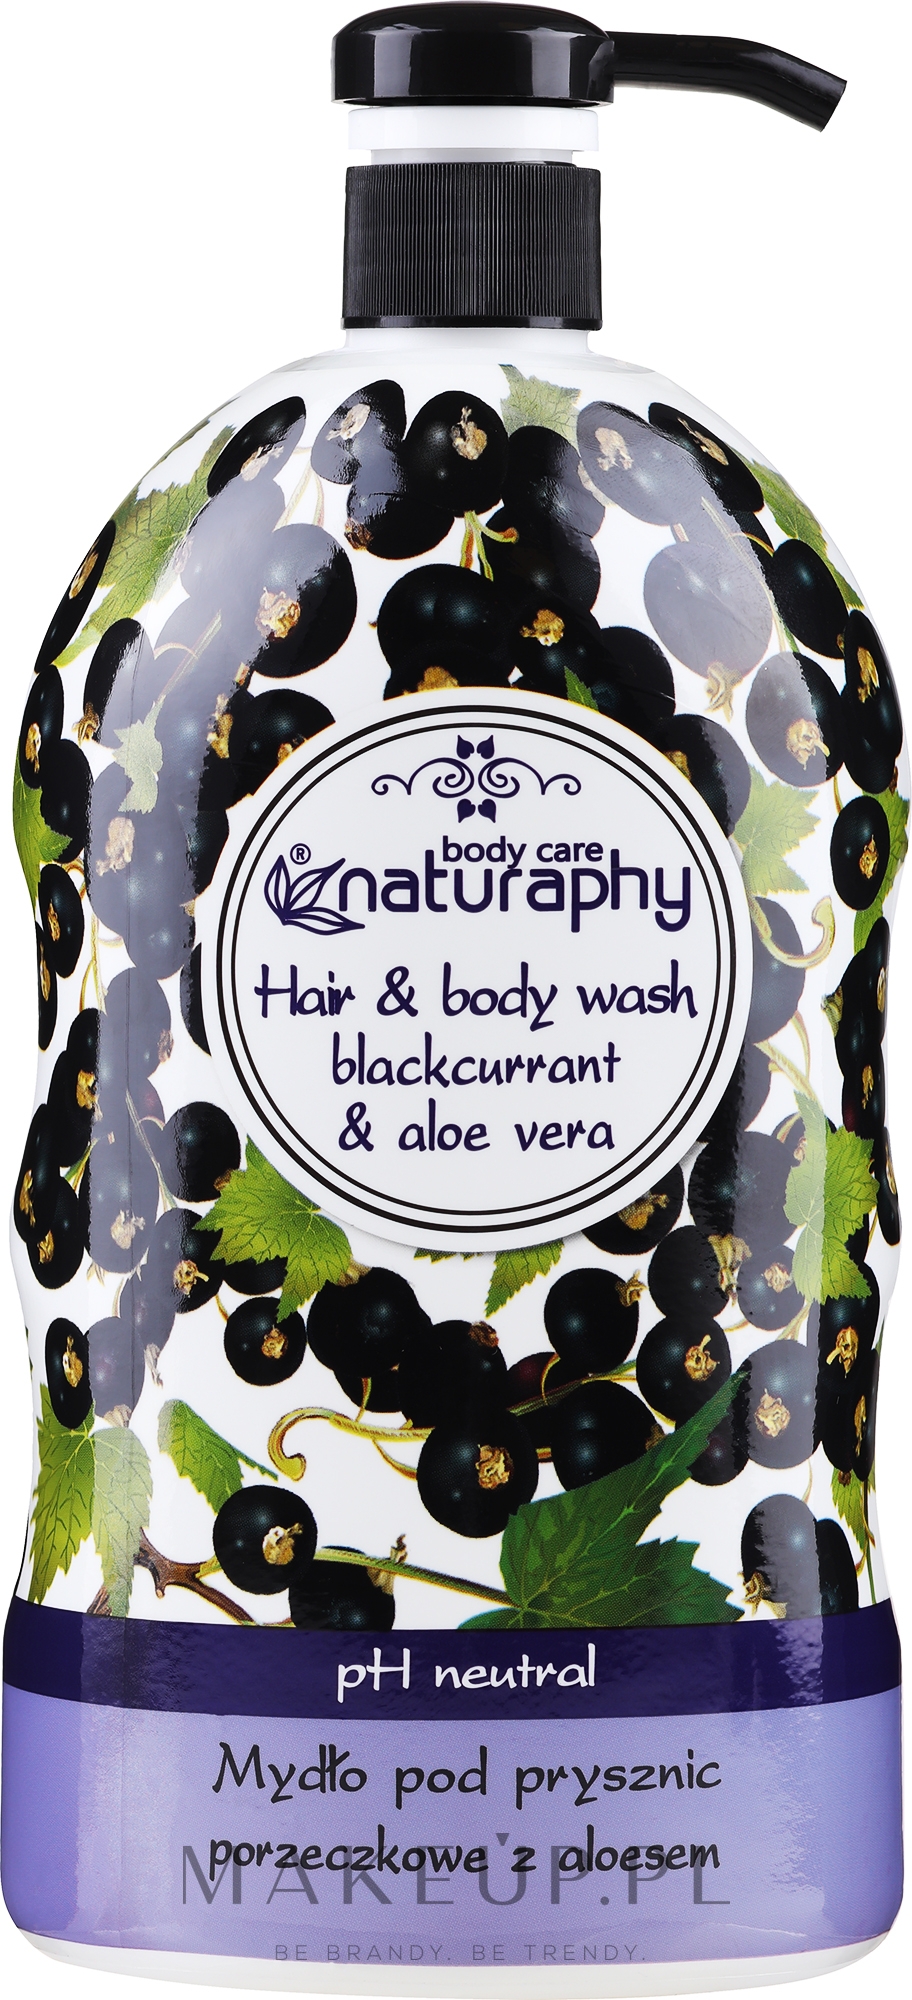 Mydło pod prysznic Porzeczka z aloesem - Naturaphy Blackcurrant & Aloe Vera Hair & Body Wash — Zdjęcie 1000 ml